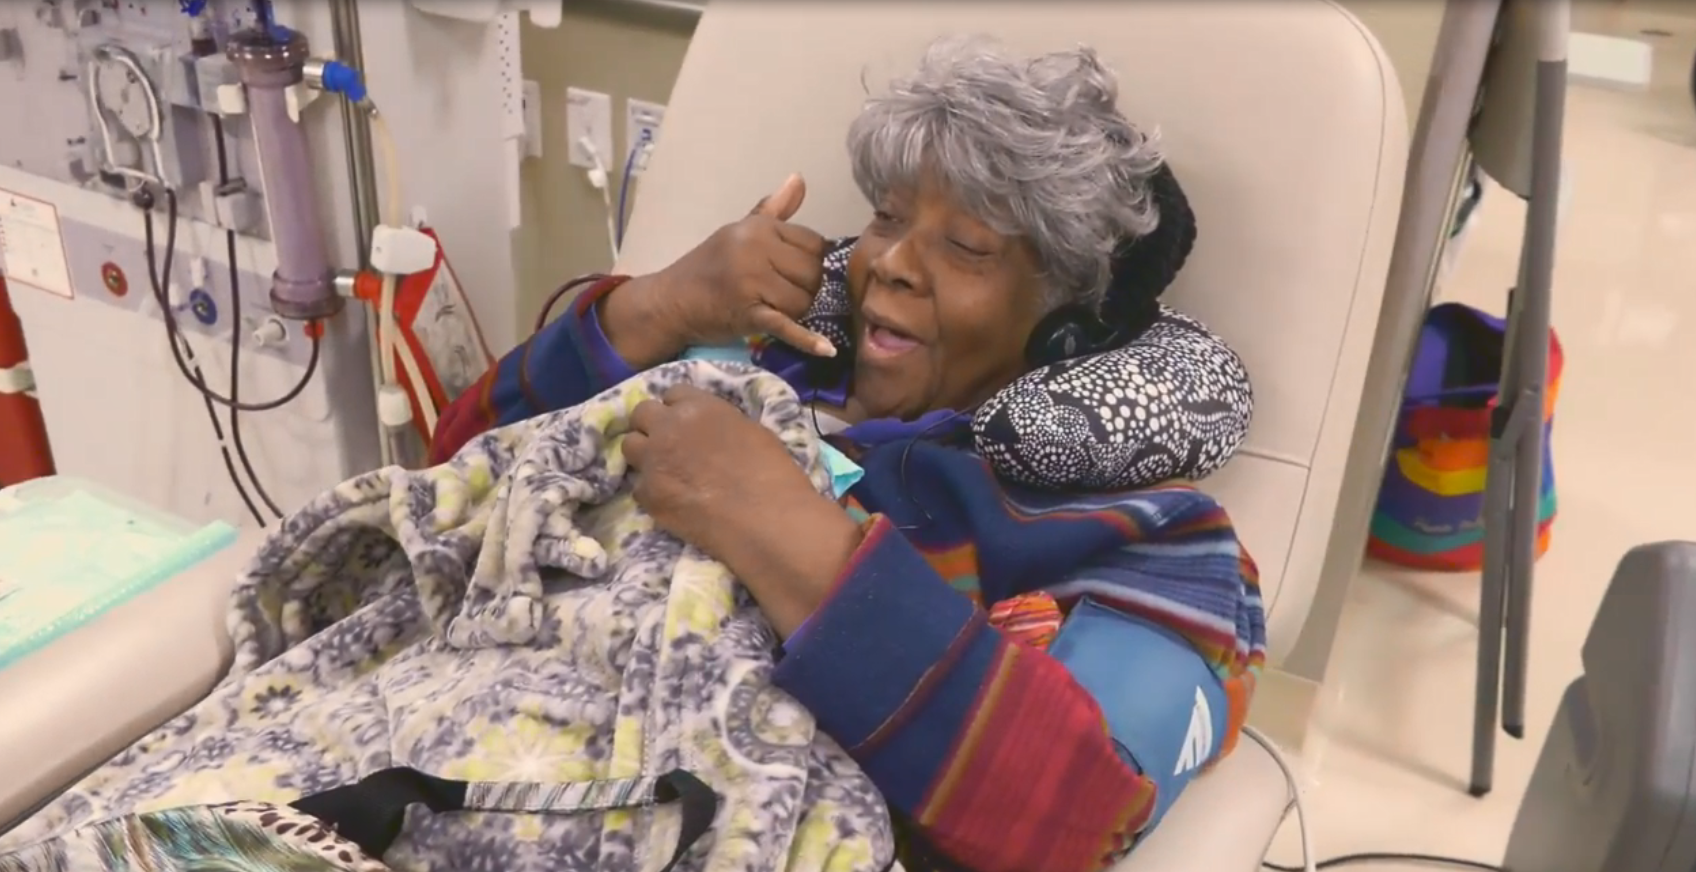 A patient laughs through dialysis treatment